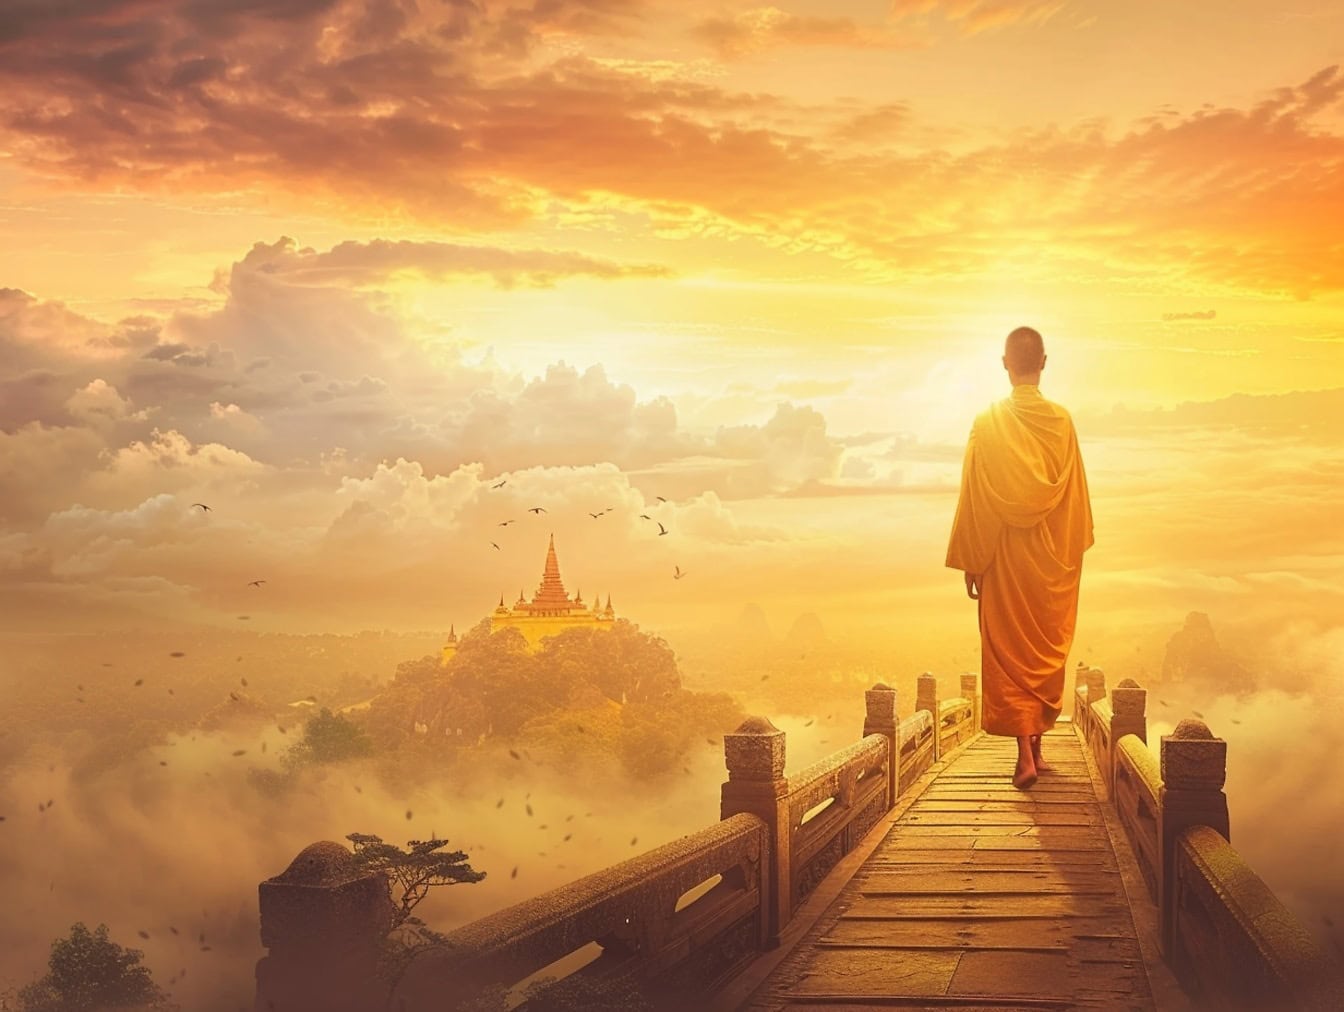 Buddhistisk Shaolin-munk, der går på en fodgængerbro i skyerne ved solnedgang, en illustration af fred og ro på vejen til himlen